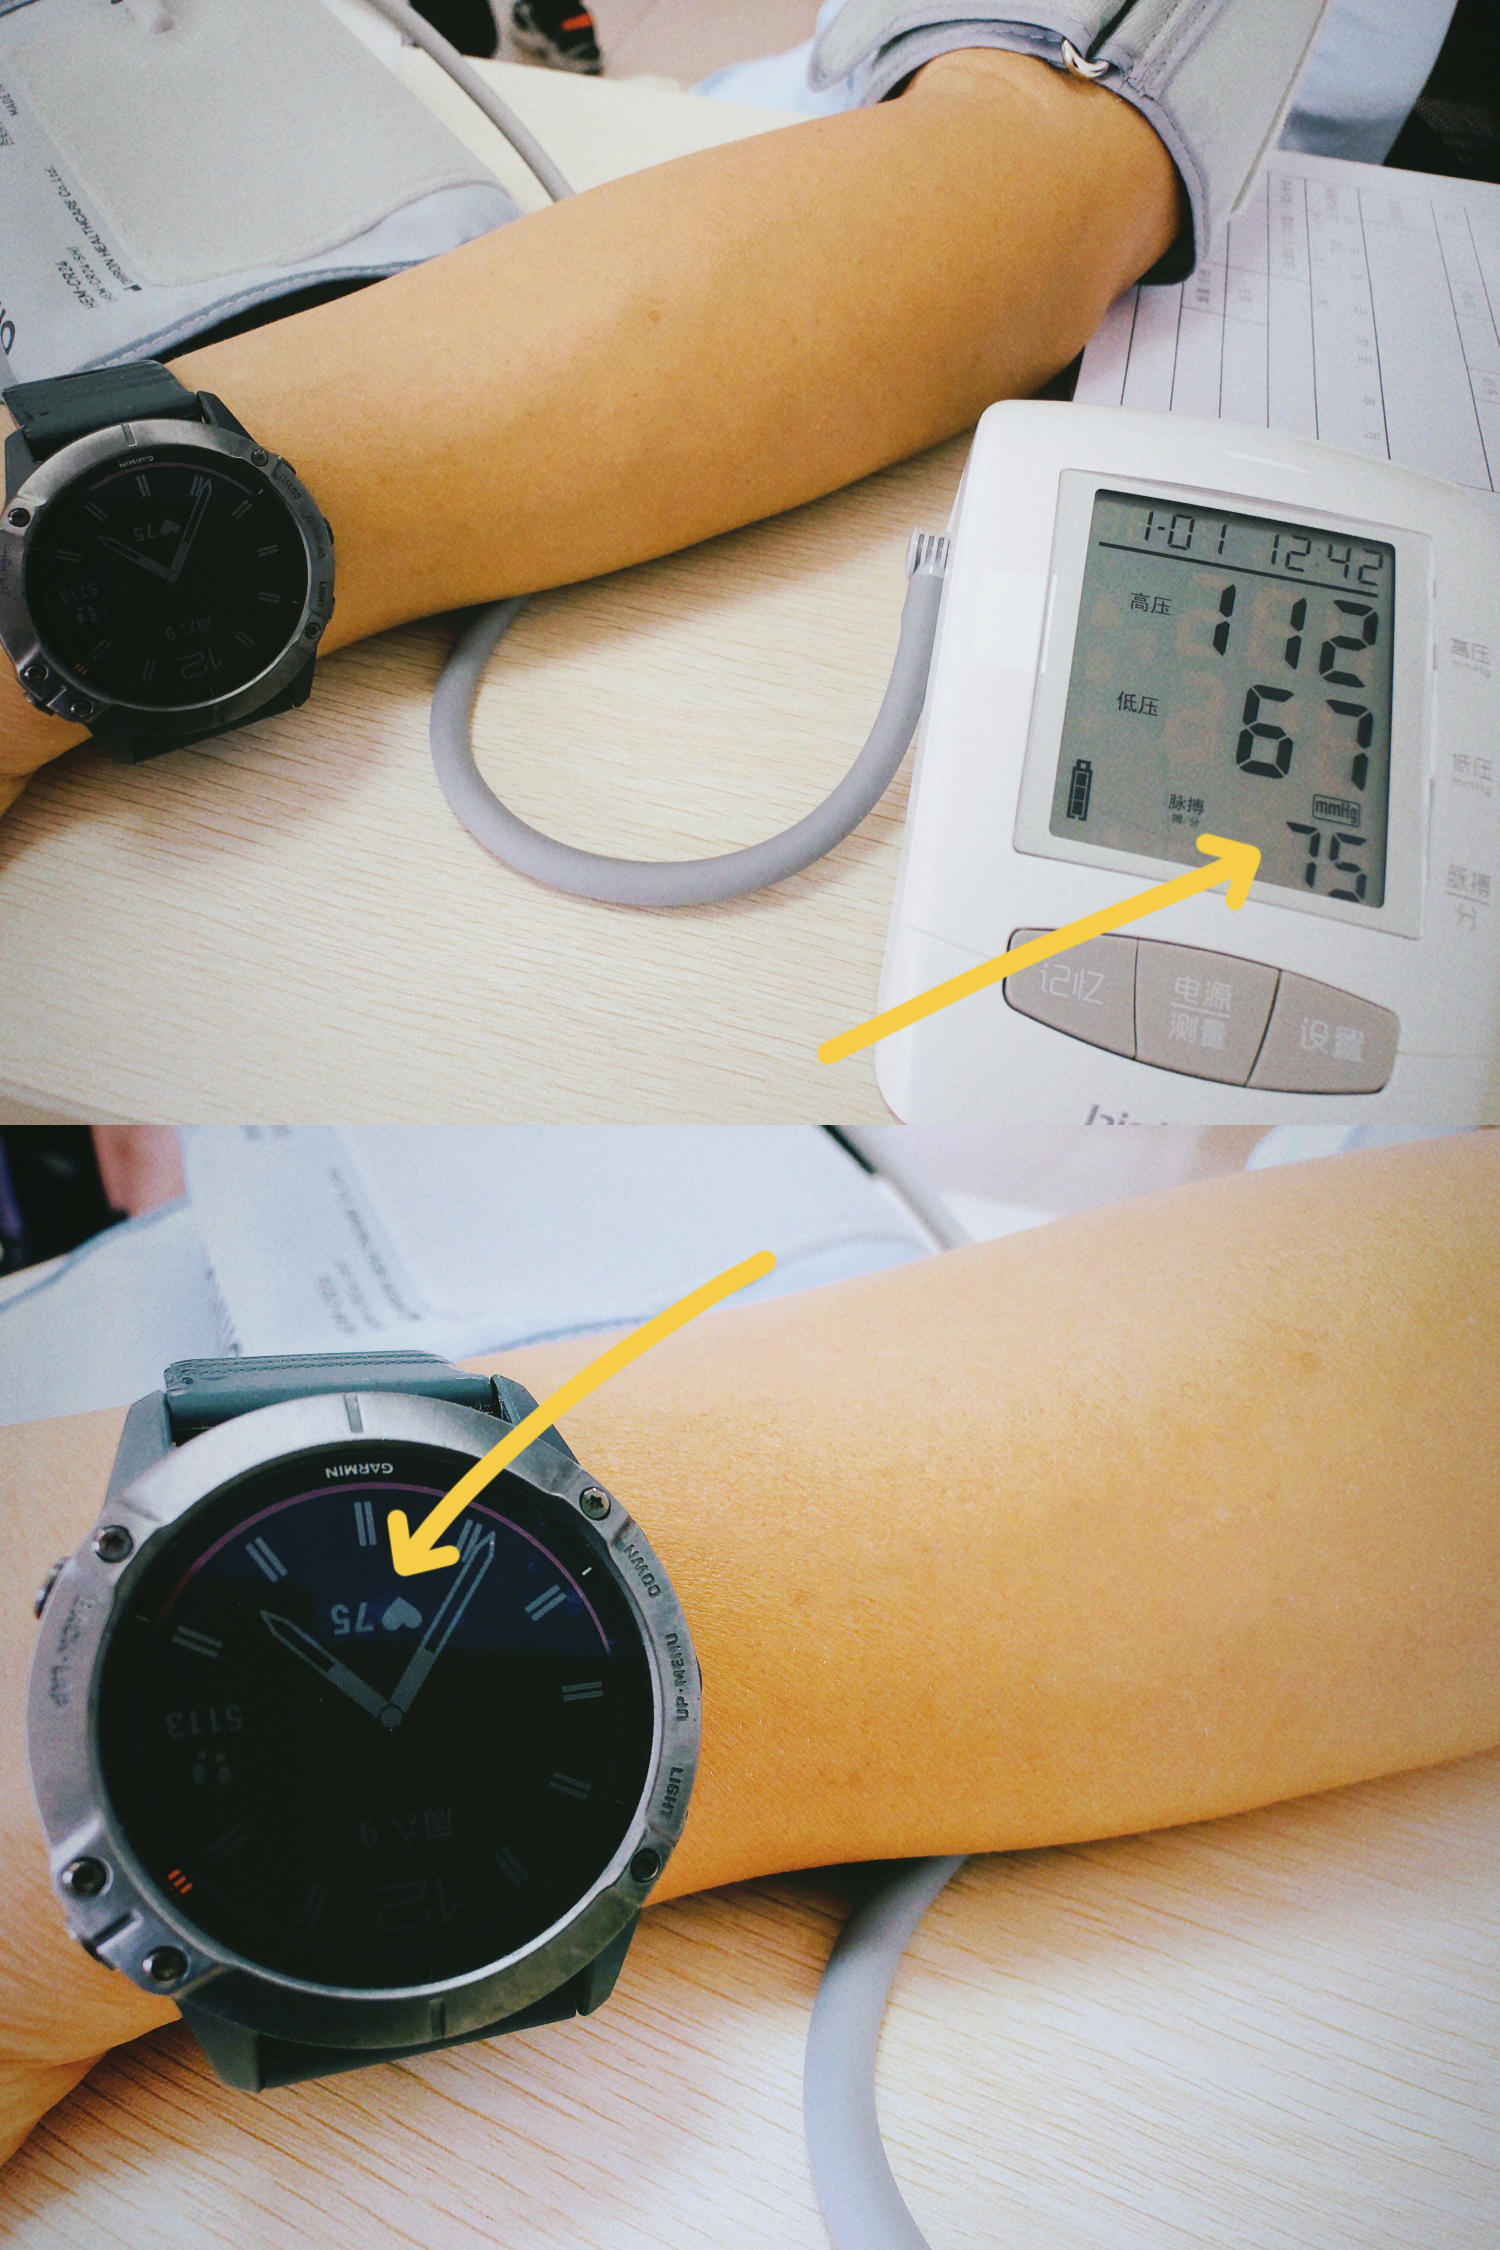 看到手繪獎狀血壓有點高不怕，經常血壓高那得備個血壓計